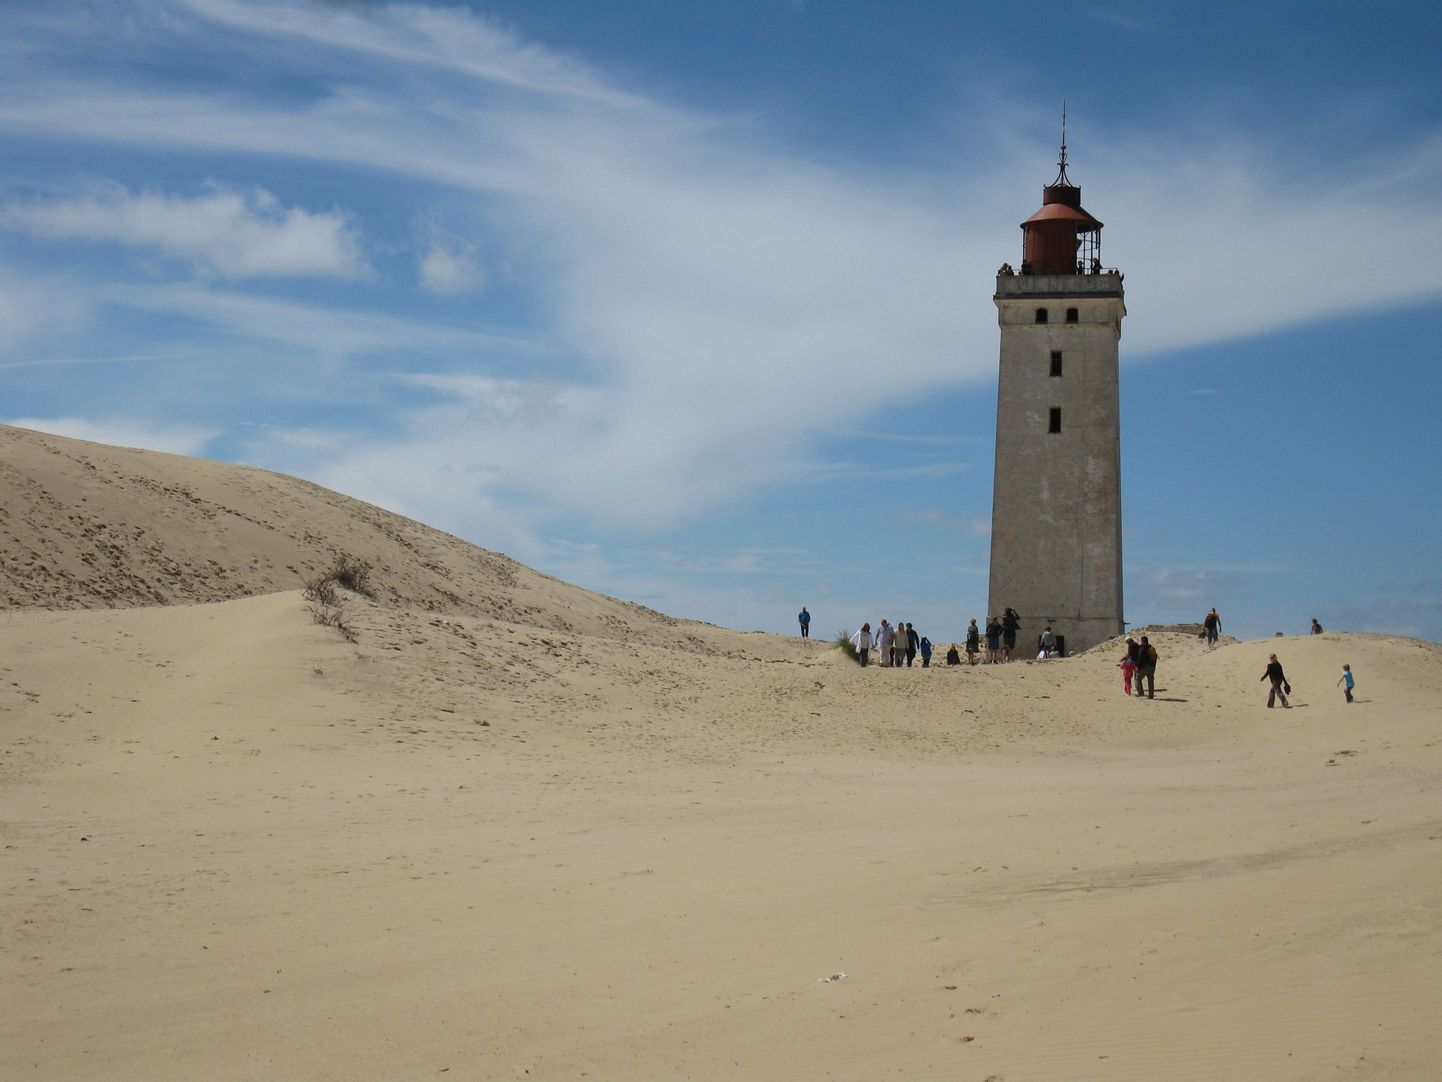 «Страж пустынных дюн», как называют маяк Рубьерг Кнуд в Дании, использовался до 1968 года.
Пески и море постепенно его пожирают, и не исключено, что лет через 20 он исчезнет с лица земли.